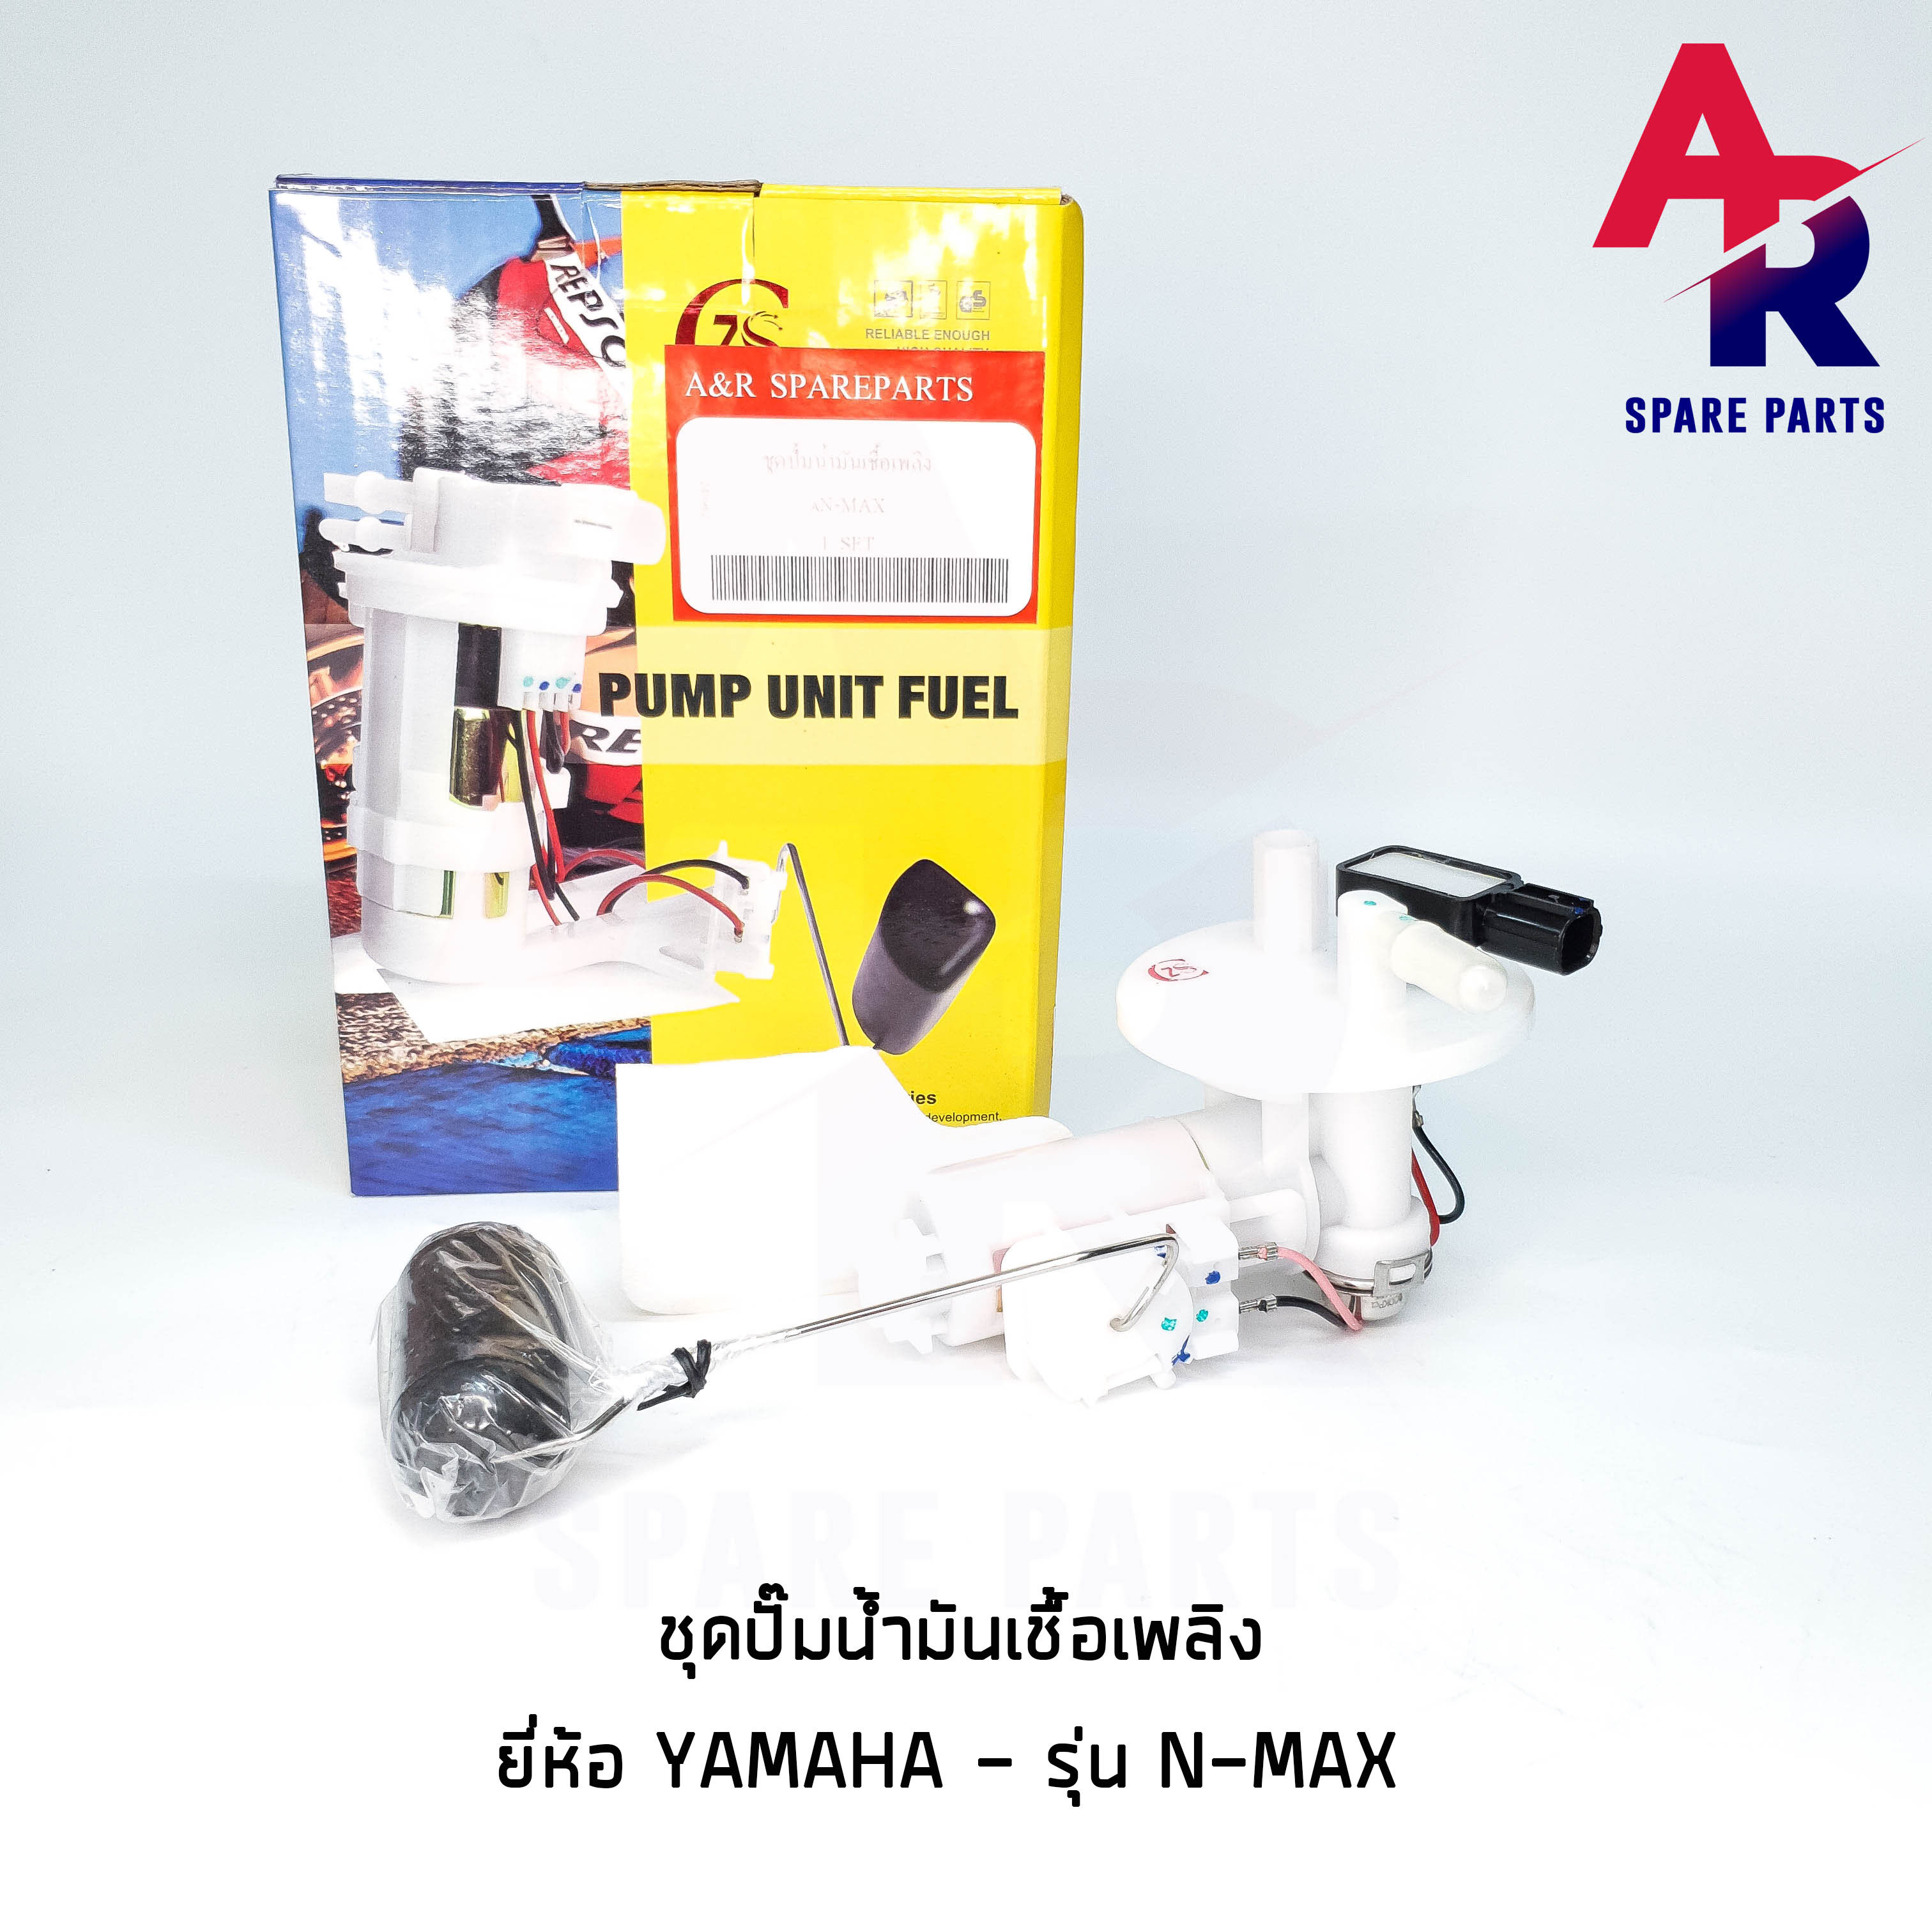 ชุดปั๊มน้ำมันเชื้อเพลิง (ปั๊มติ๊ก) YAMAHA - N-MAX เกรด SE อย่างดี รหัส 2DP-E3907-00